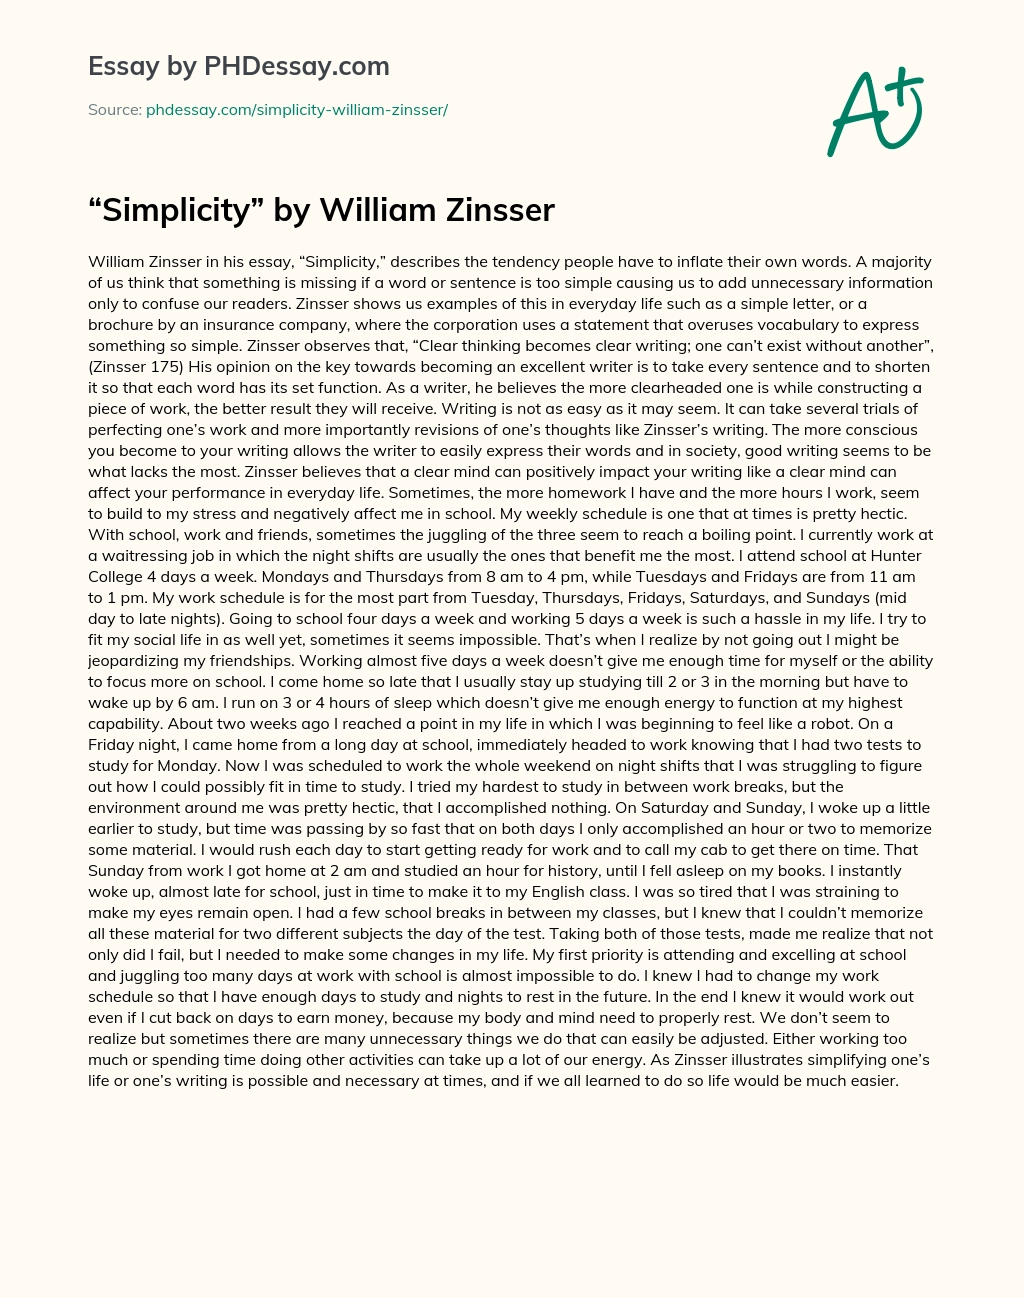 Simplicity by William Zinsser essay